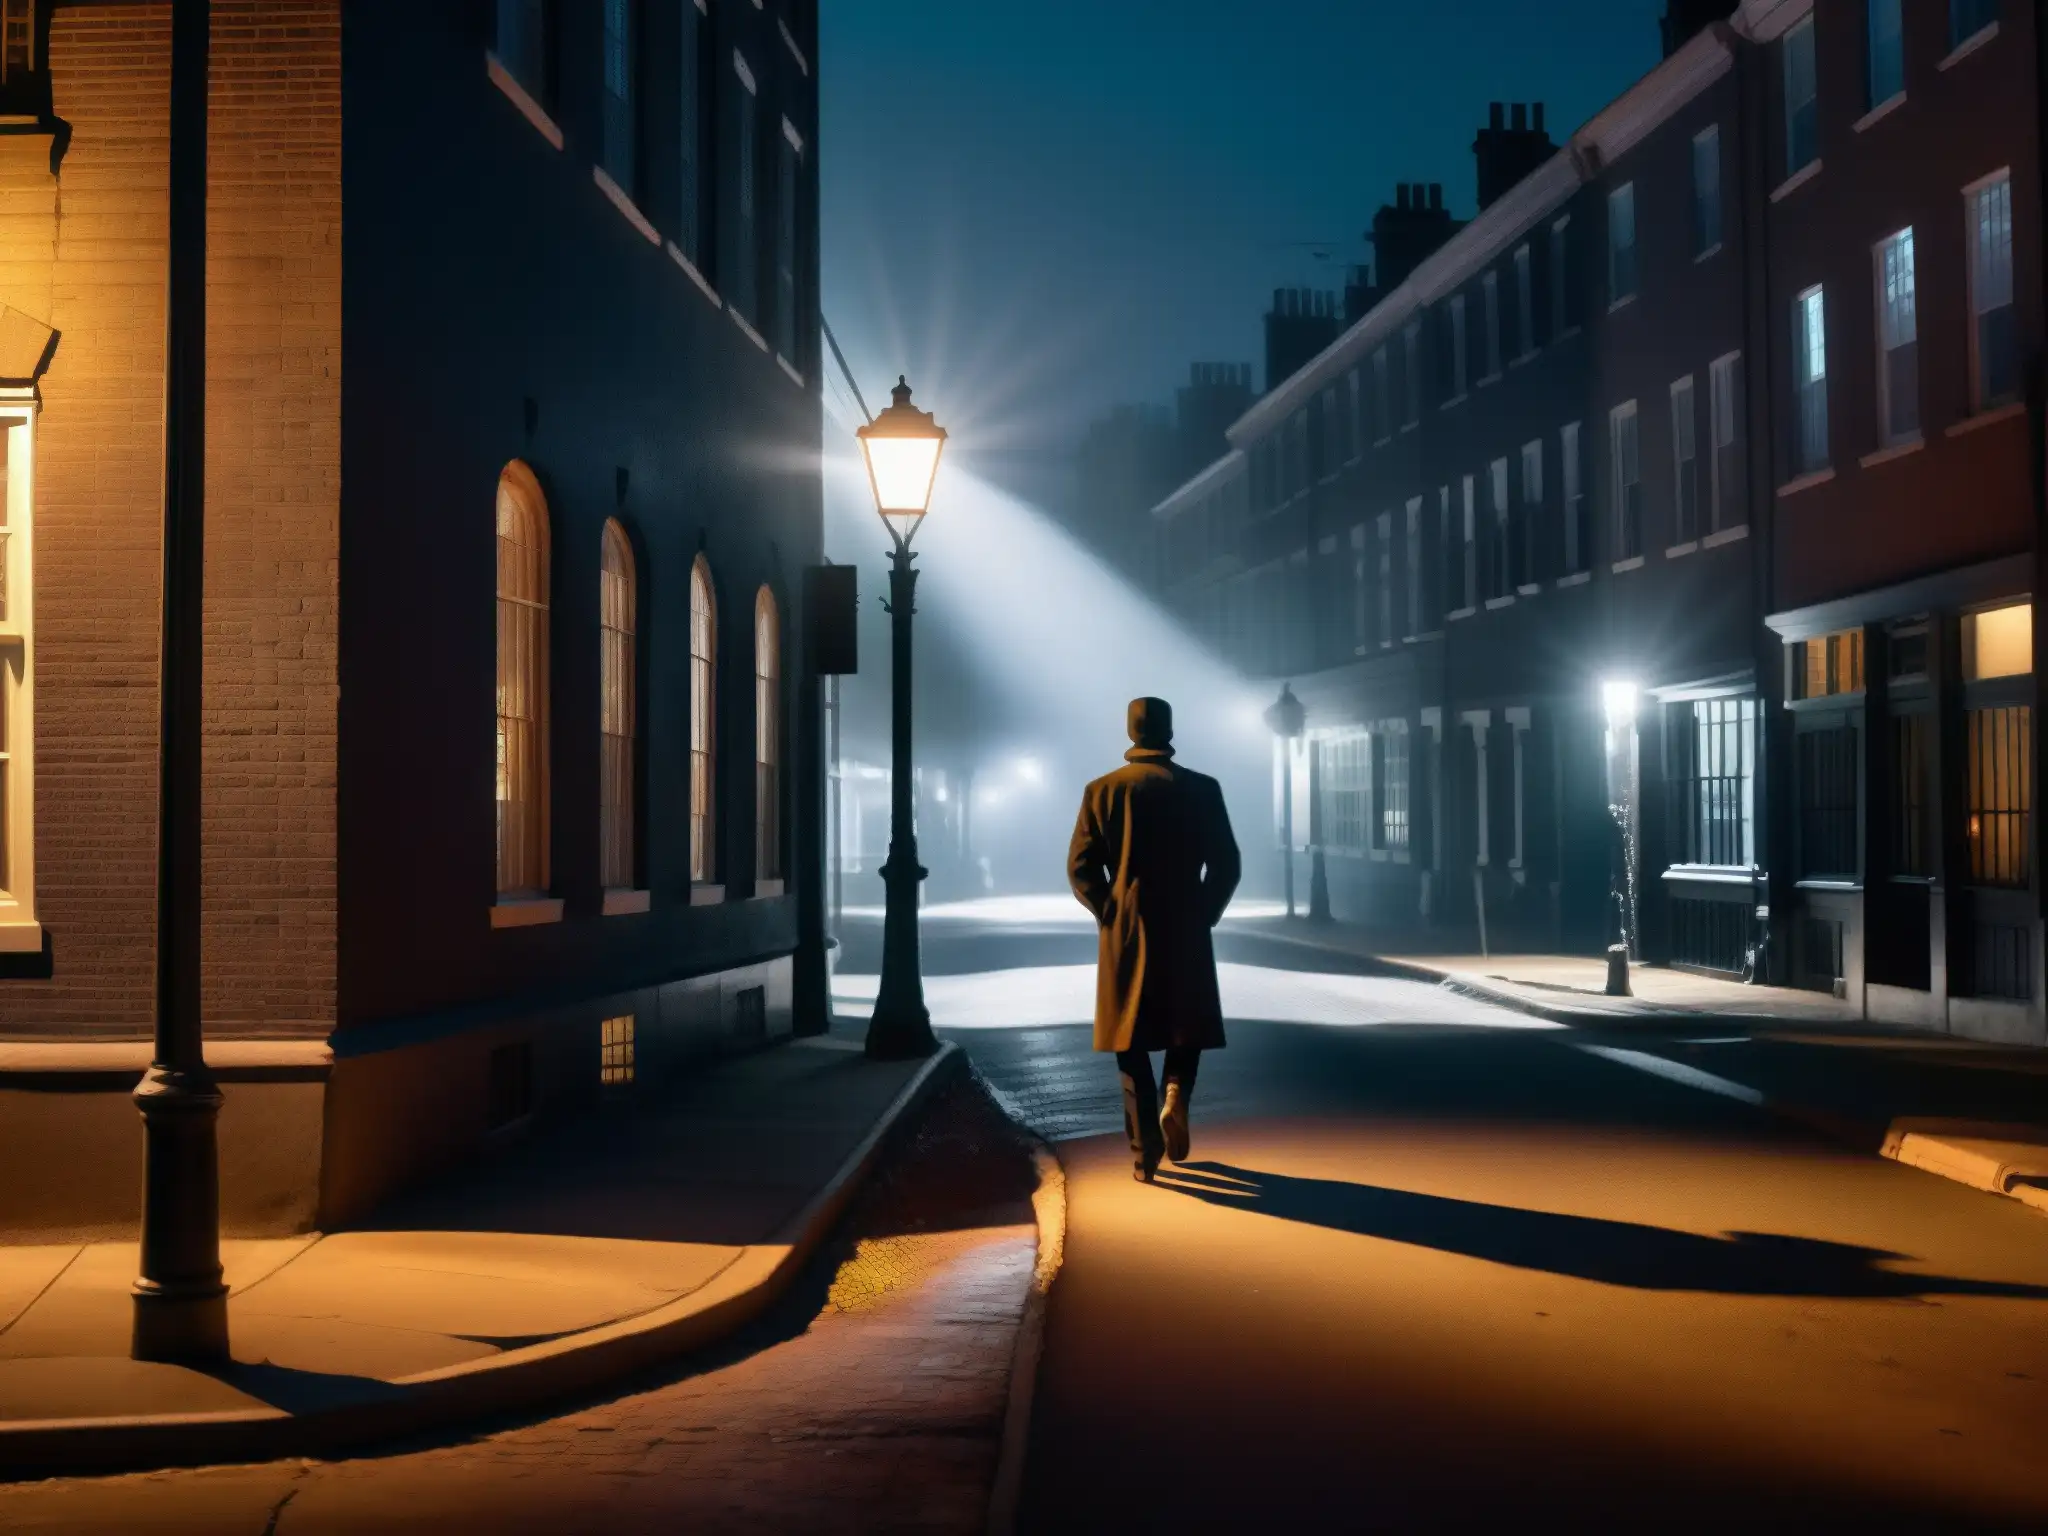 Una calle oscura y misteriosa de noche con una figura sombría al fondo, evocando el origen literario de leyendas urbanas